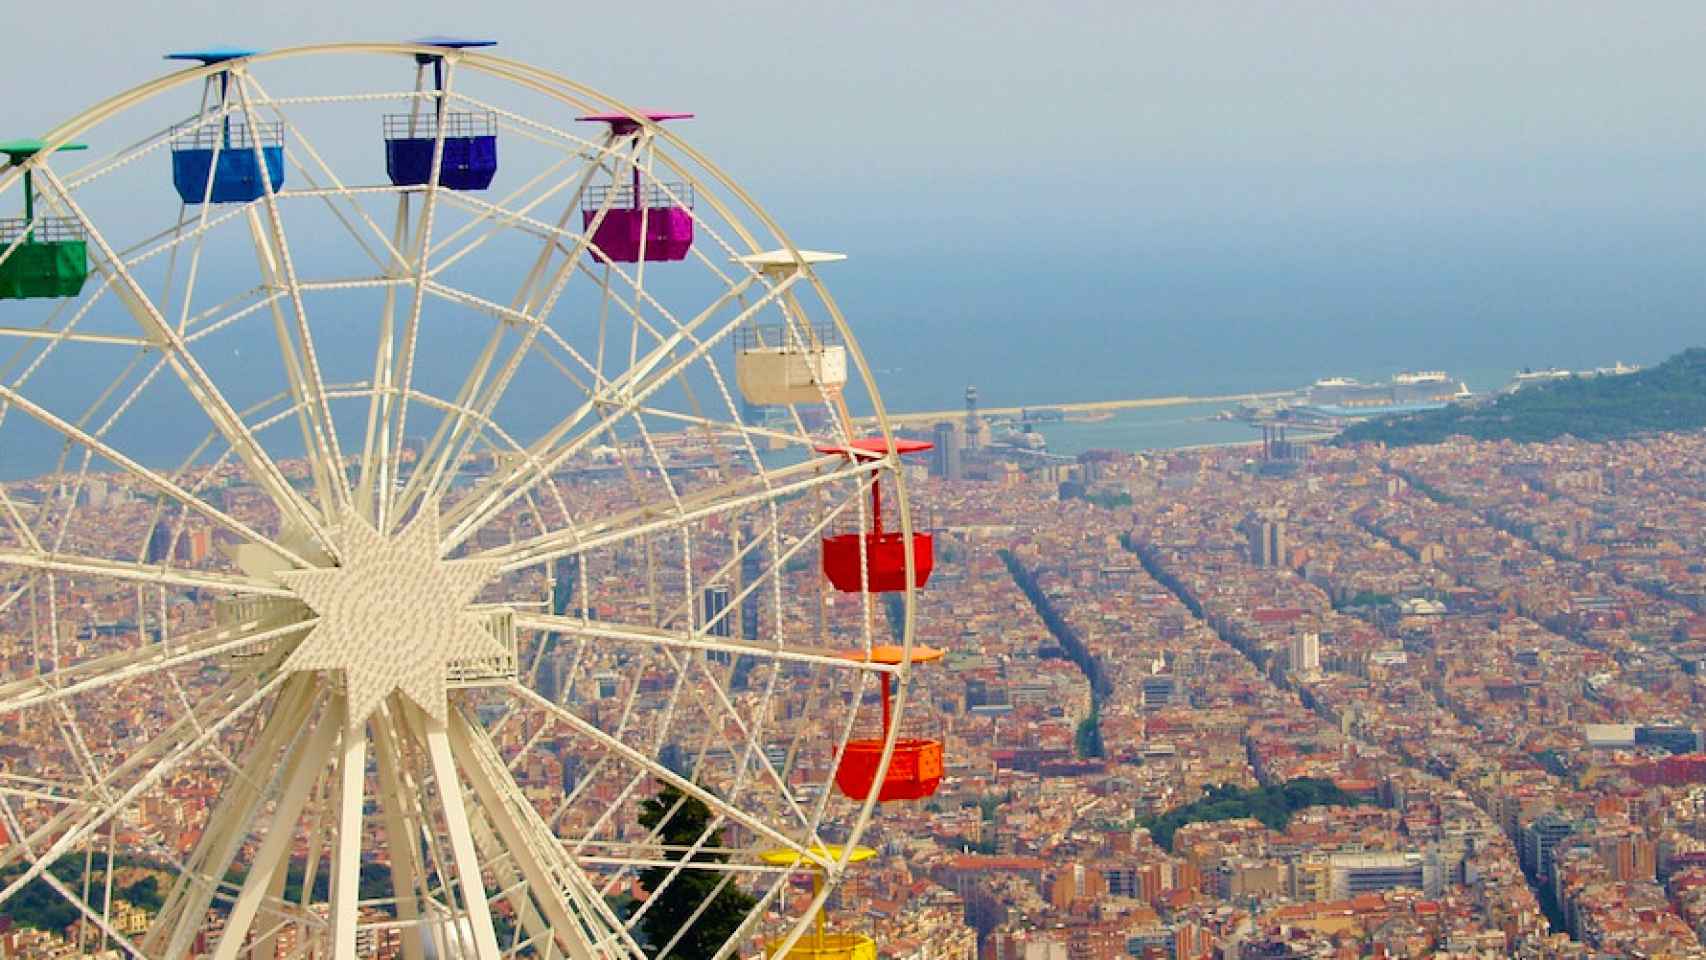 El parque de atracciones del Tibidabo, uno de los planes clásicos del verano en Barcelona / PIXABAY